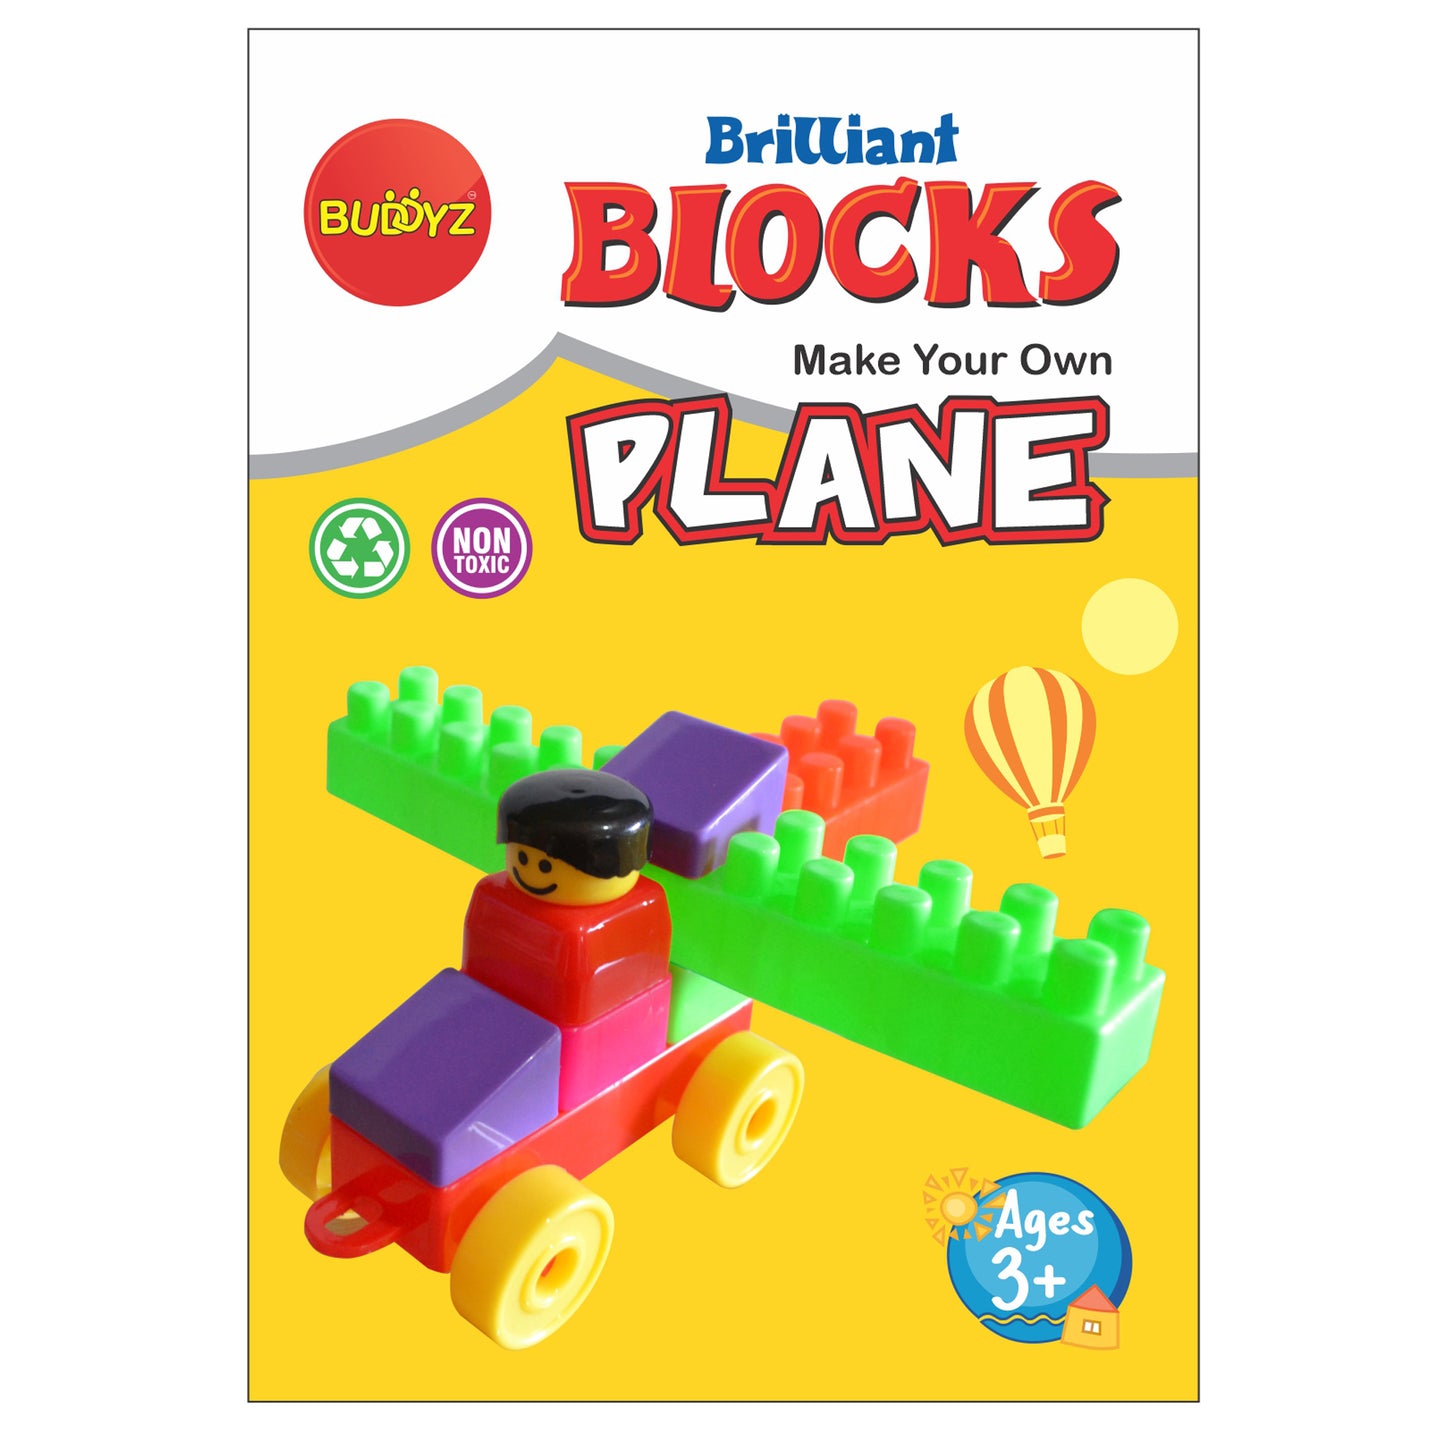 Brilliant Blocks - Plane